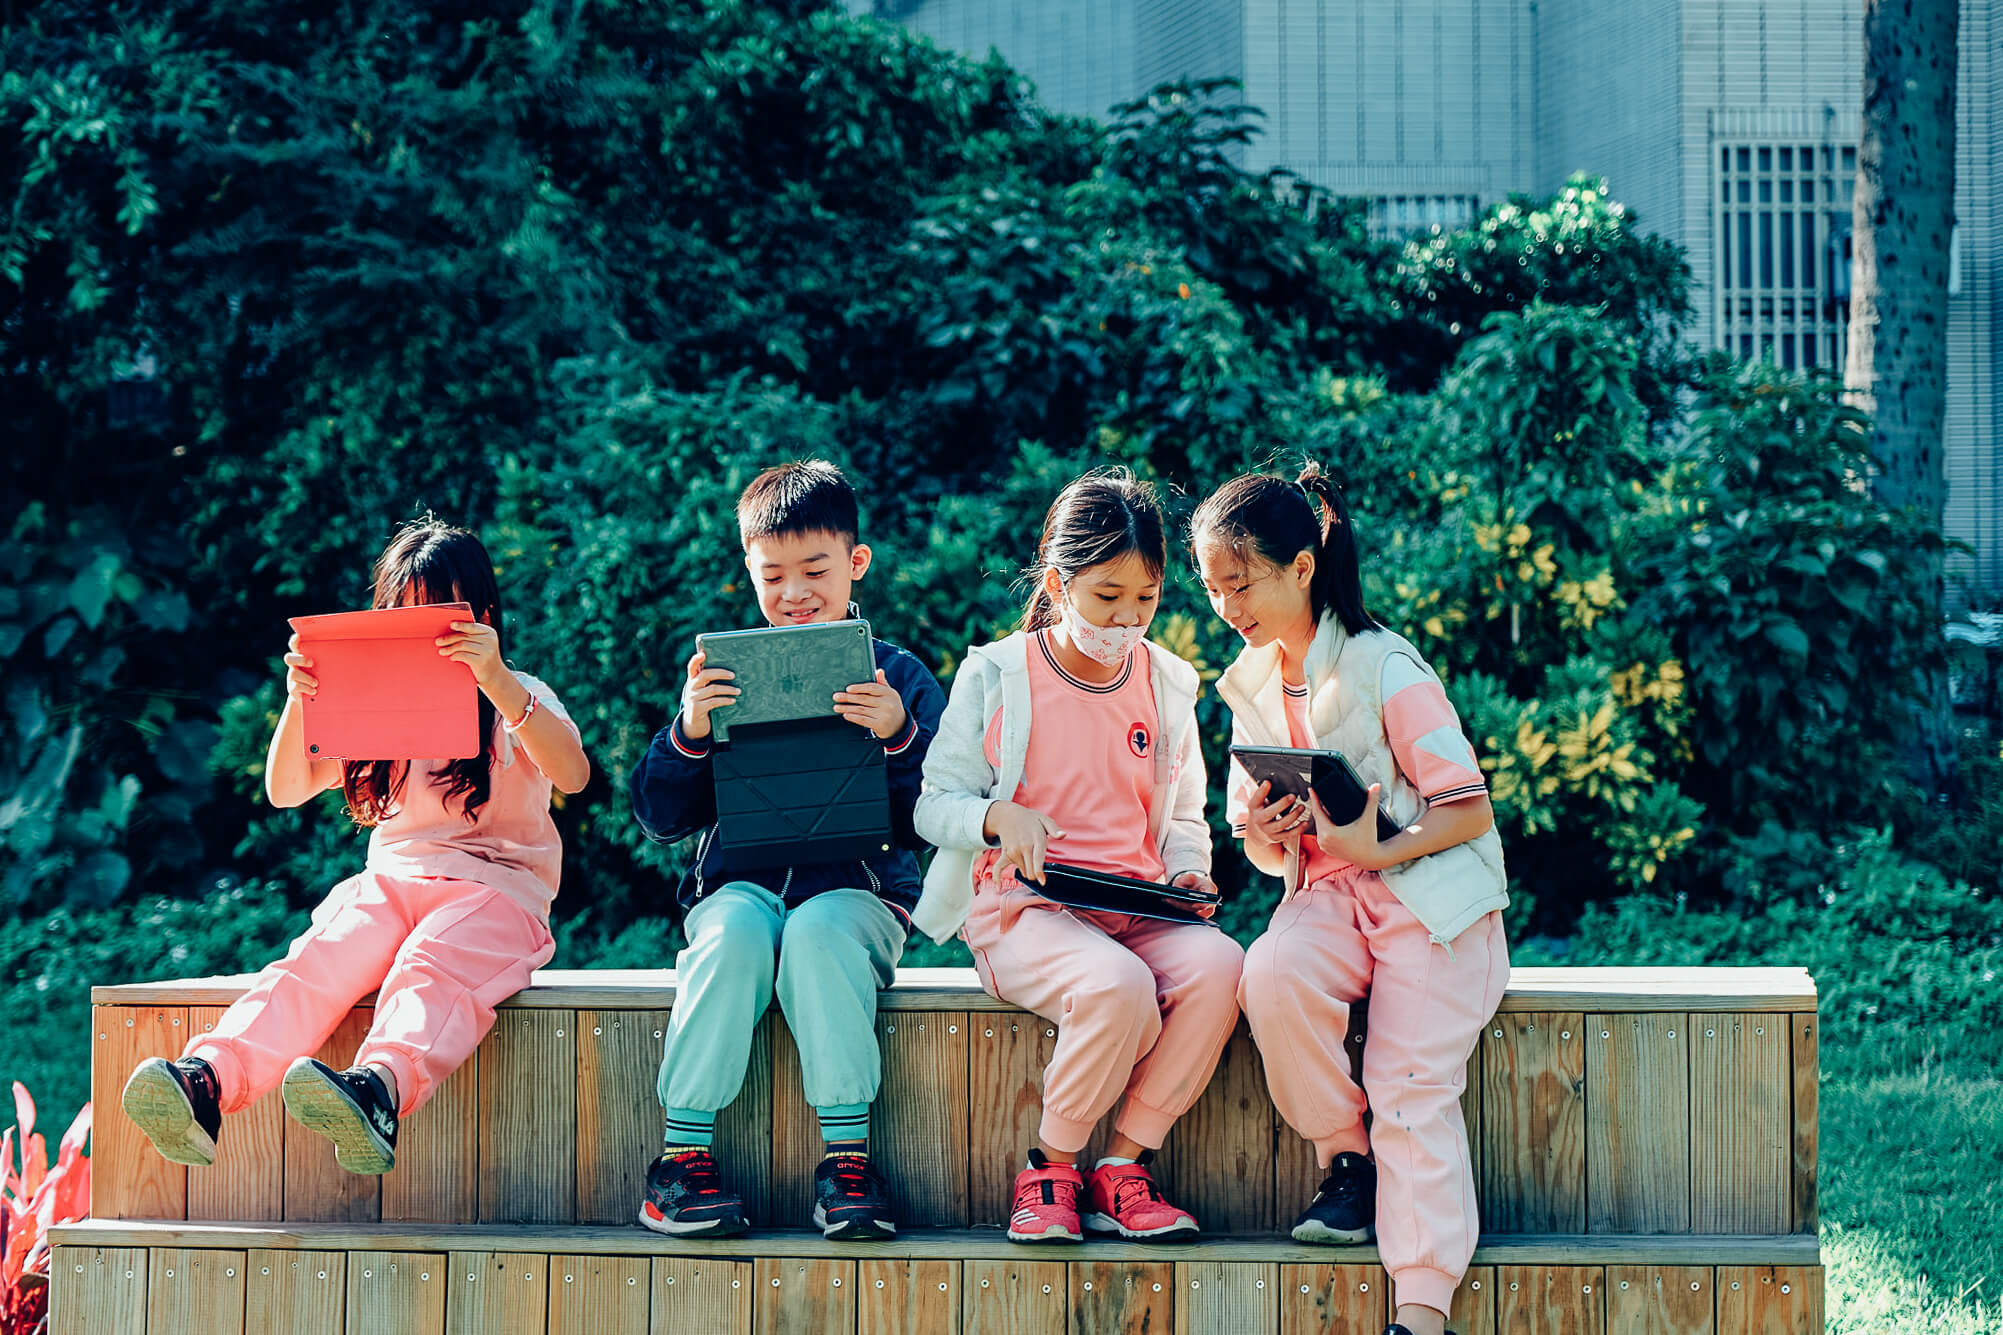 四位學童坐在校園的木製平台用平板拍攝作品畫面